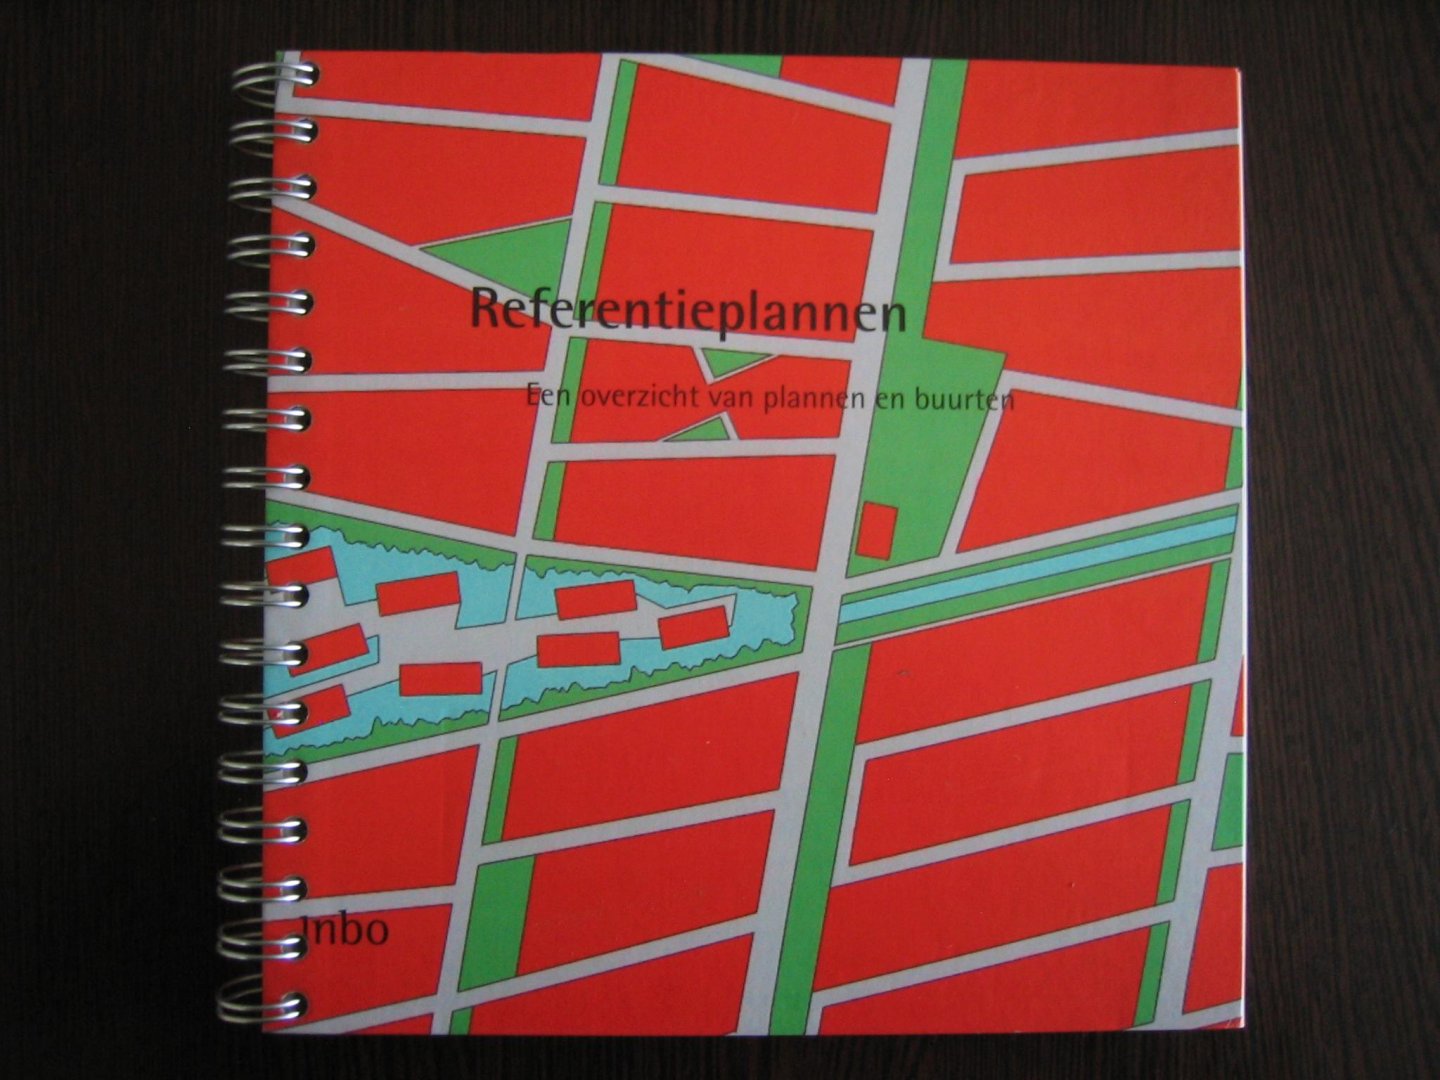 Herman Sol, Marlies Chang en Luc Bos - Referentieplannen - een overzicht van plannen en buurten